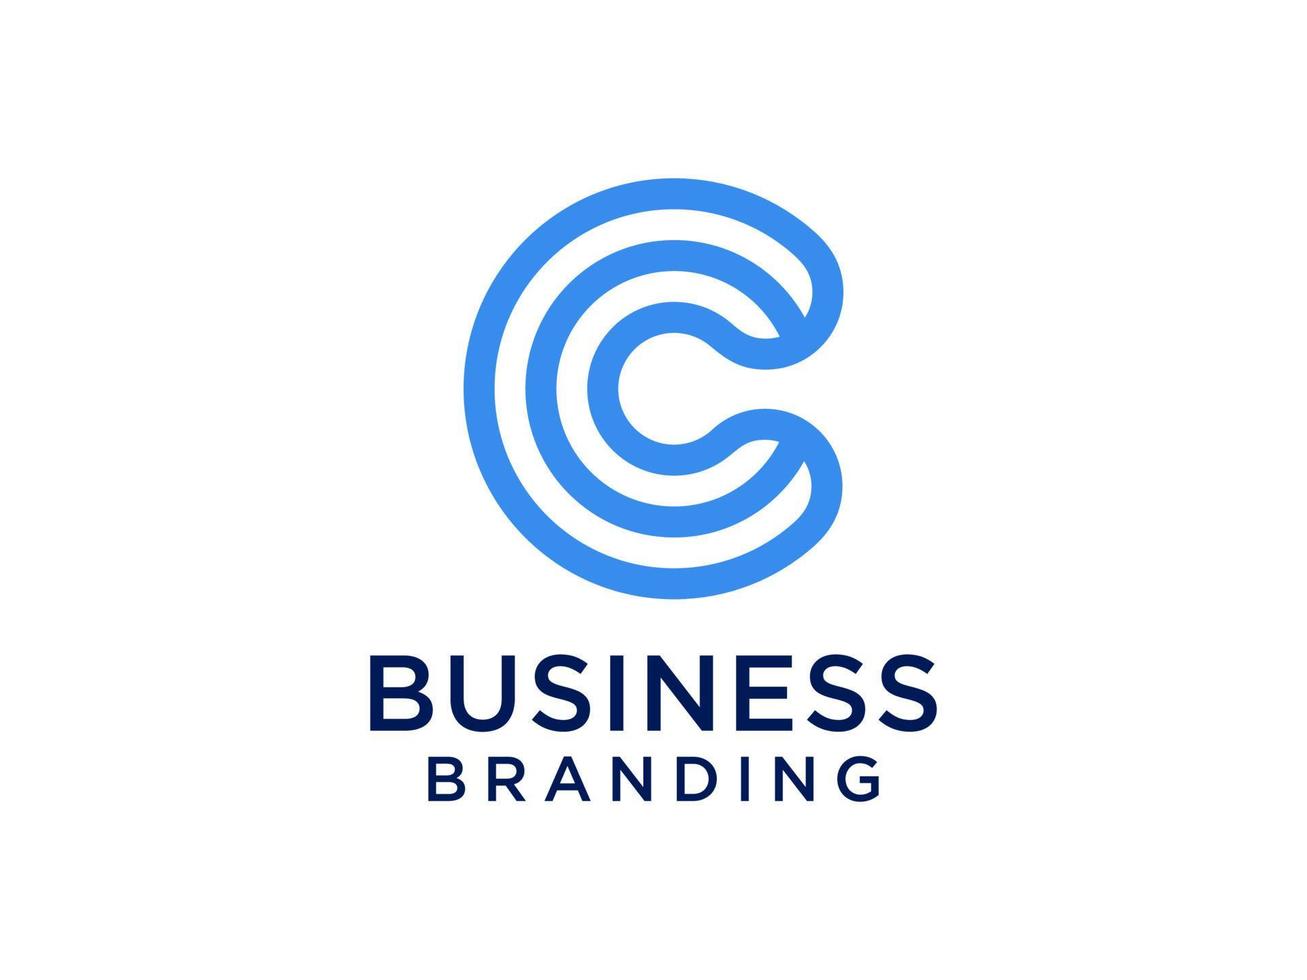 logo abstrait de la lettre initiale c. style origami de forme géométrique bleu isolé sur fond blanc. utilisable pour les logos d'entreprise et de marque. élément de modèle de conception de logo vectoriel plat.